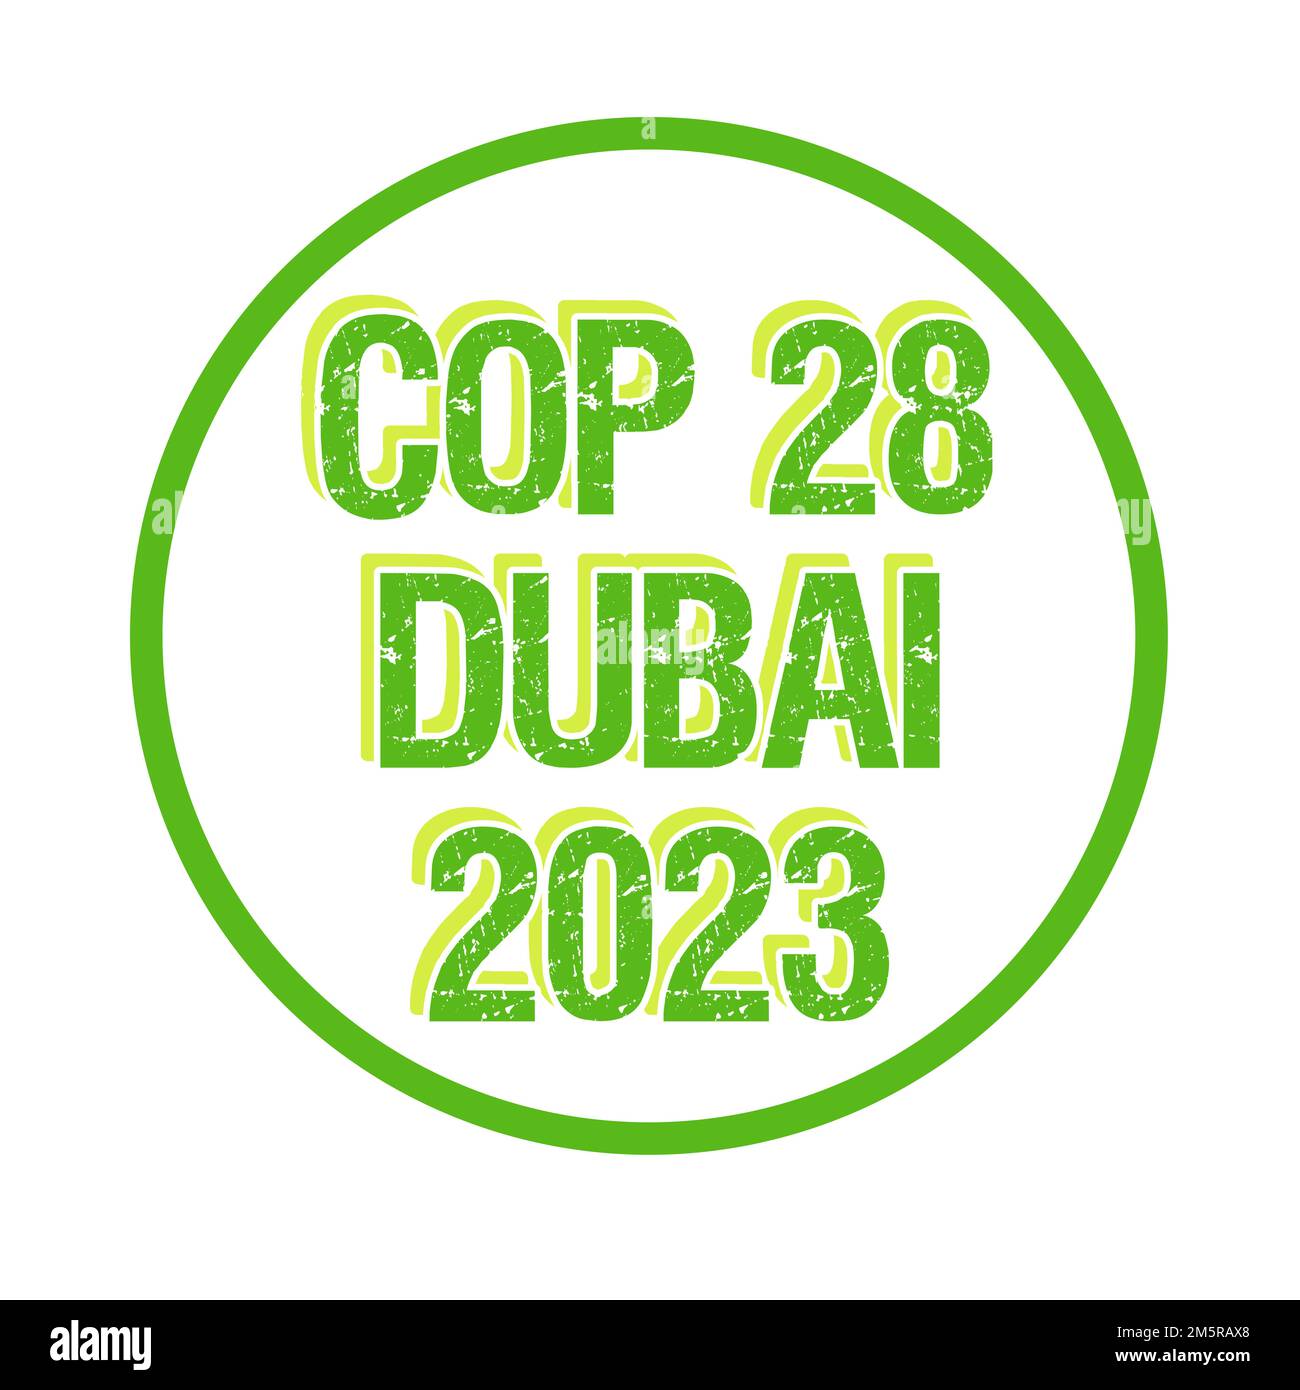 COP 28 in Dubai United Arab Emirates symbol Stock Photo - Alamy